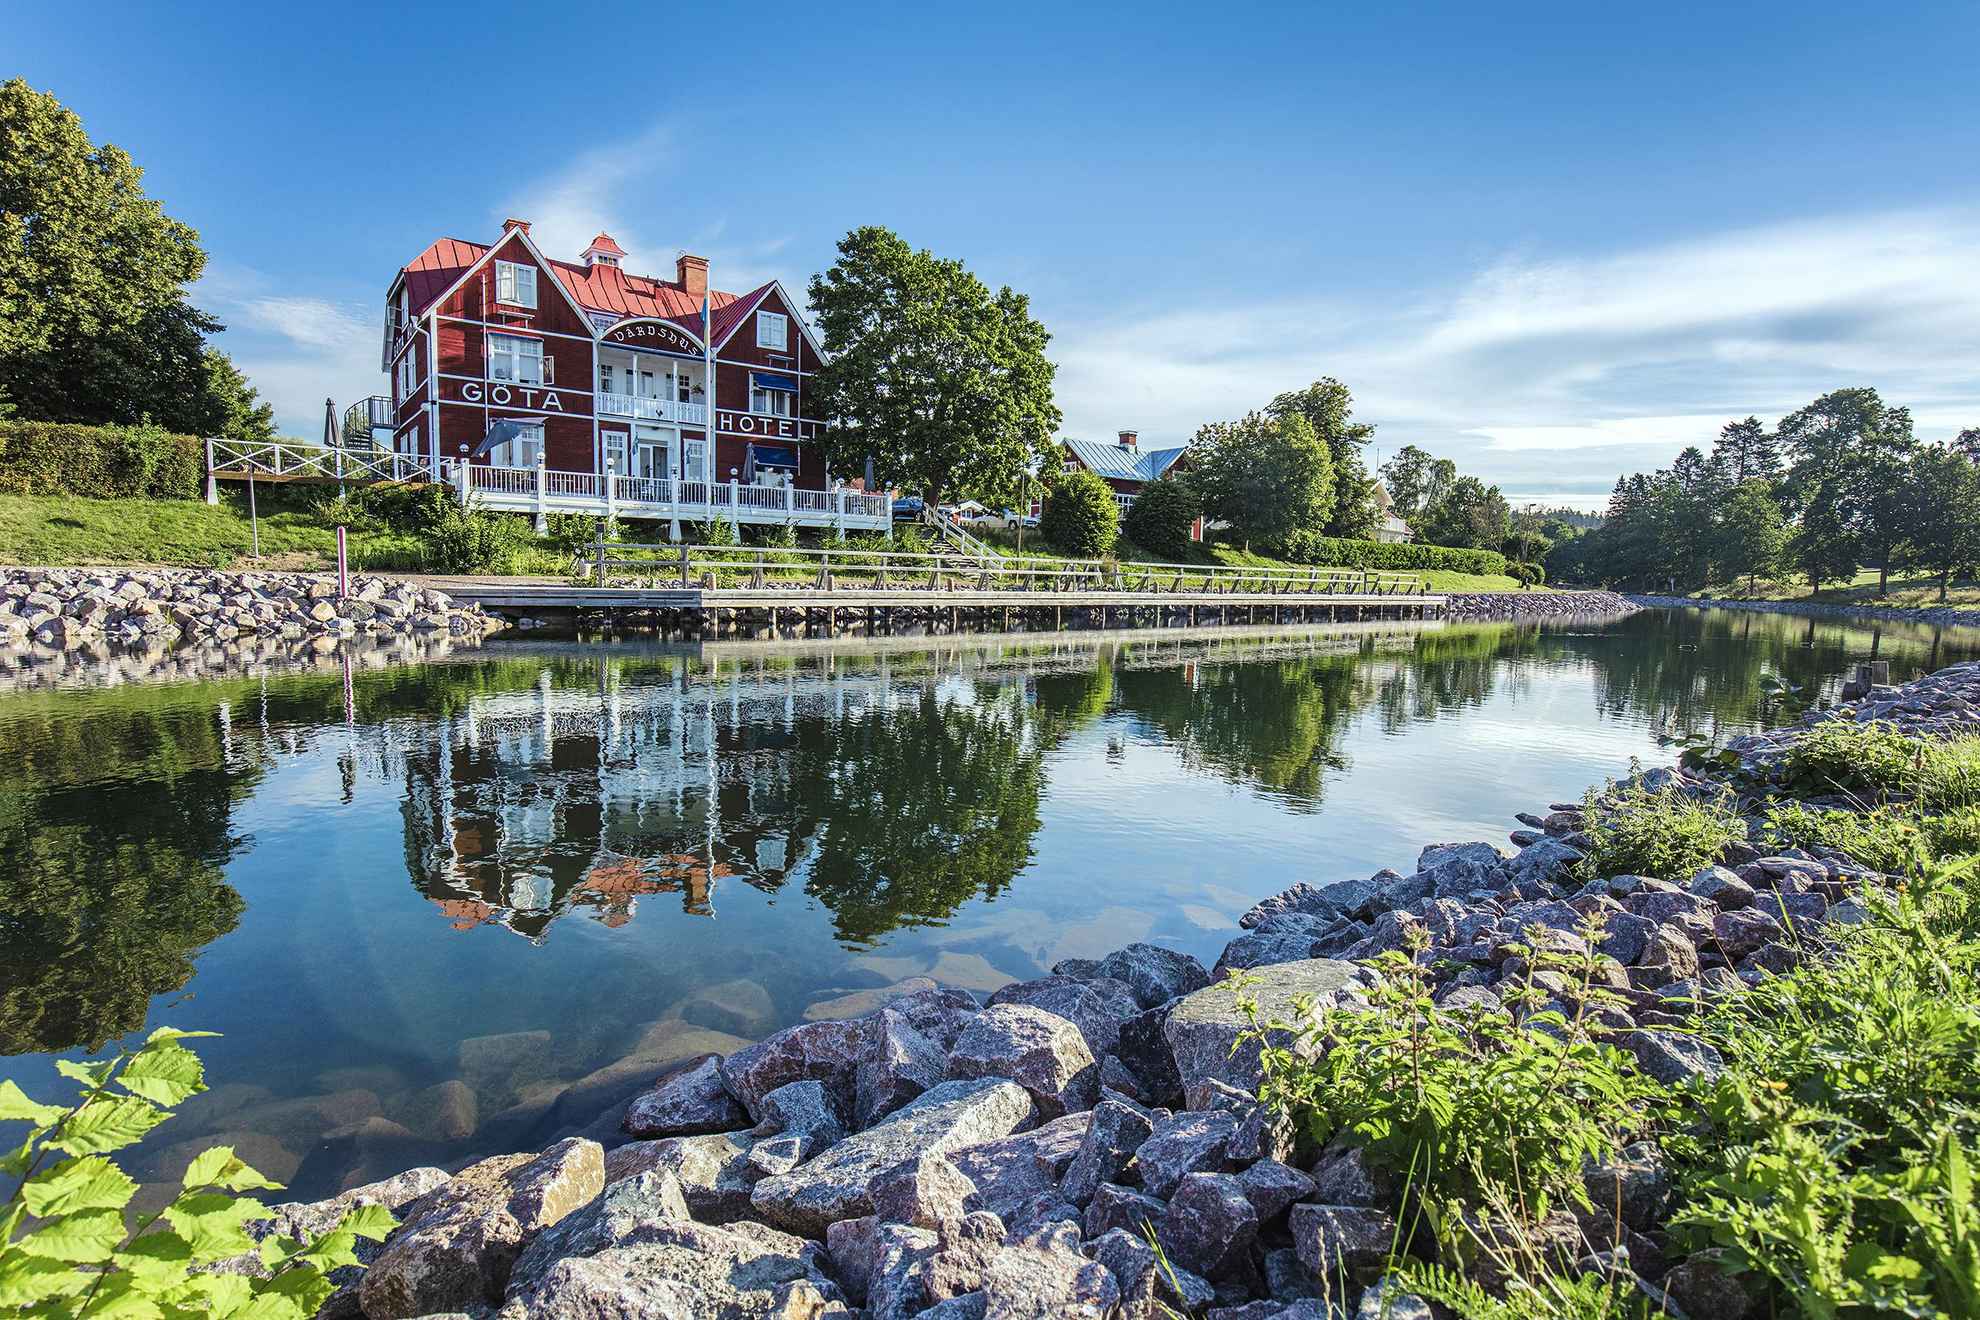 La maison en bois rouge de l'hôtel Göta située à côté du canal Göta.